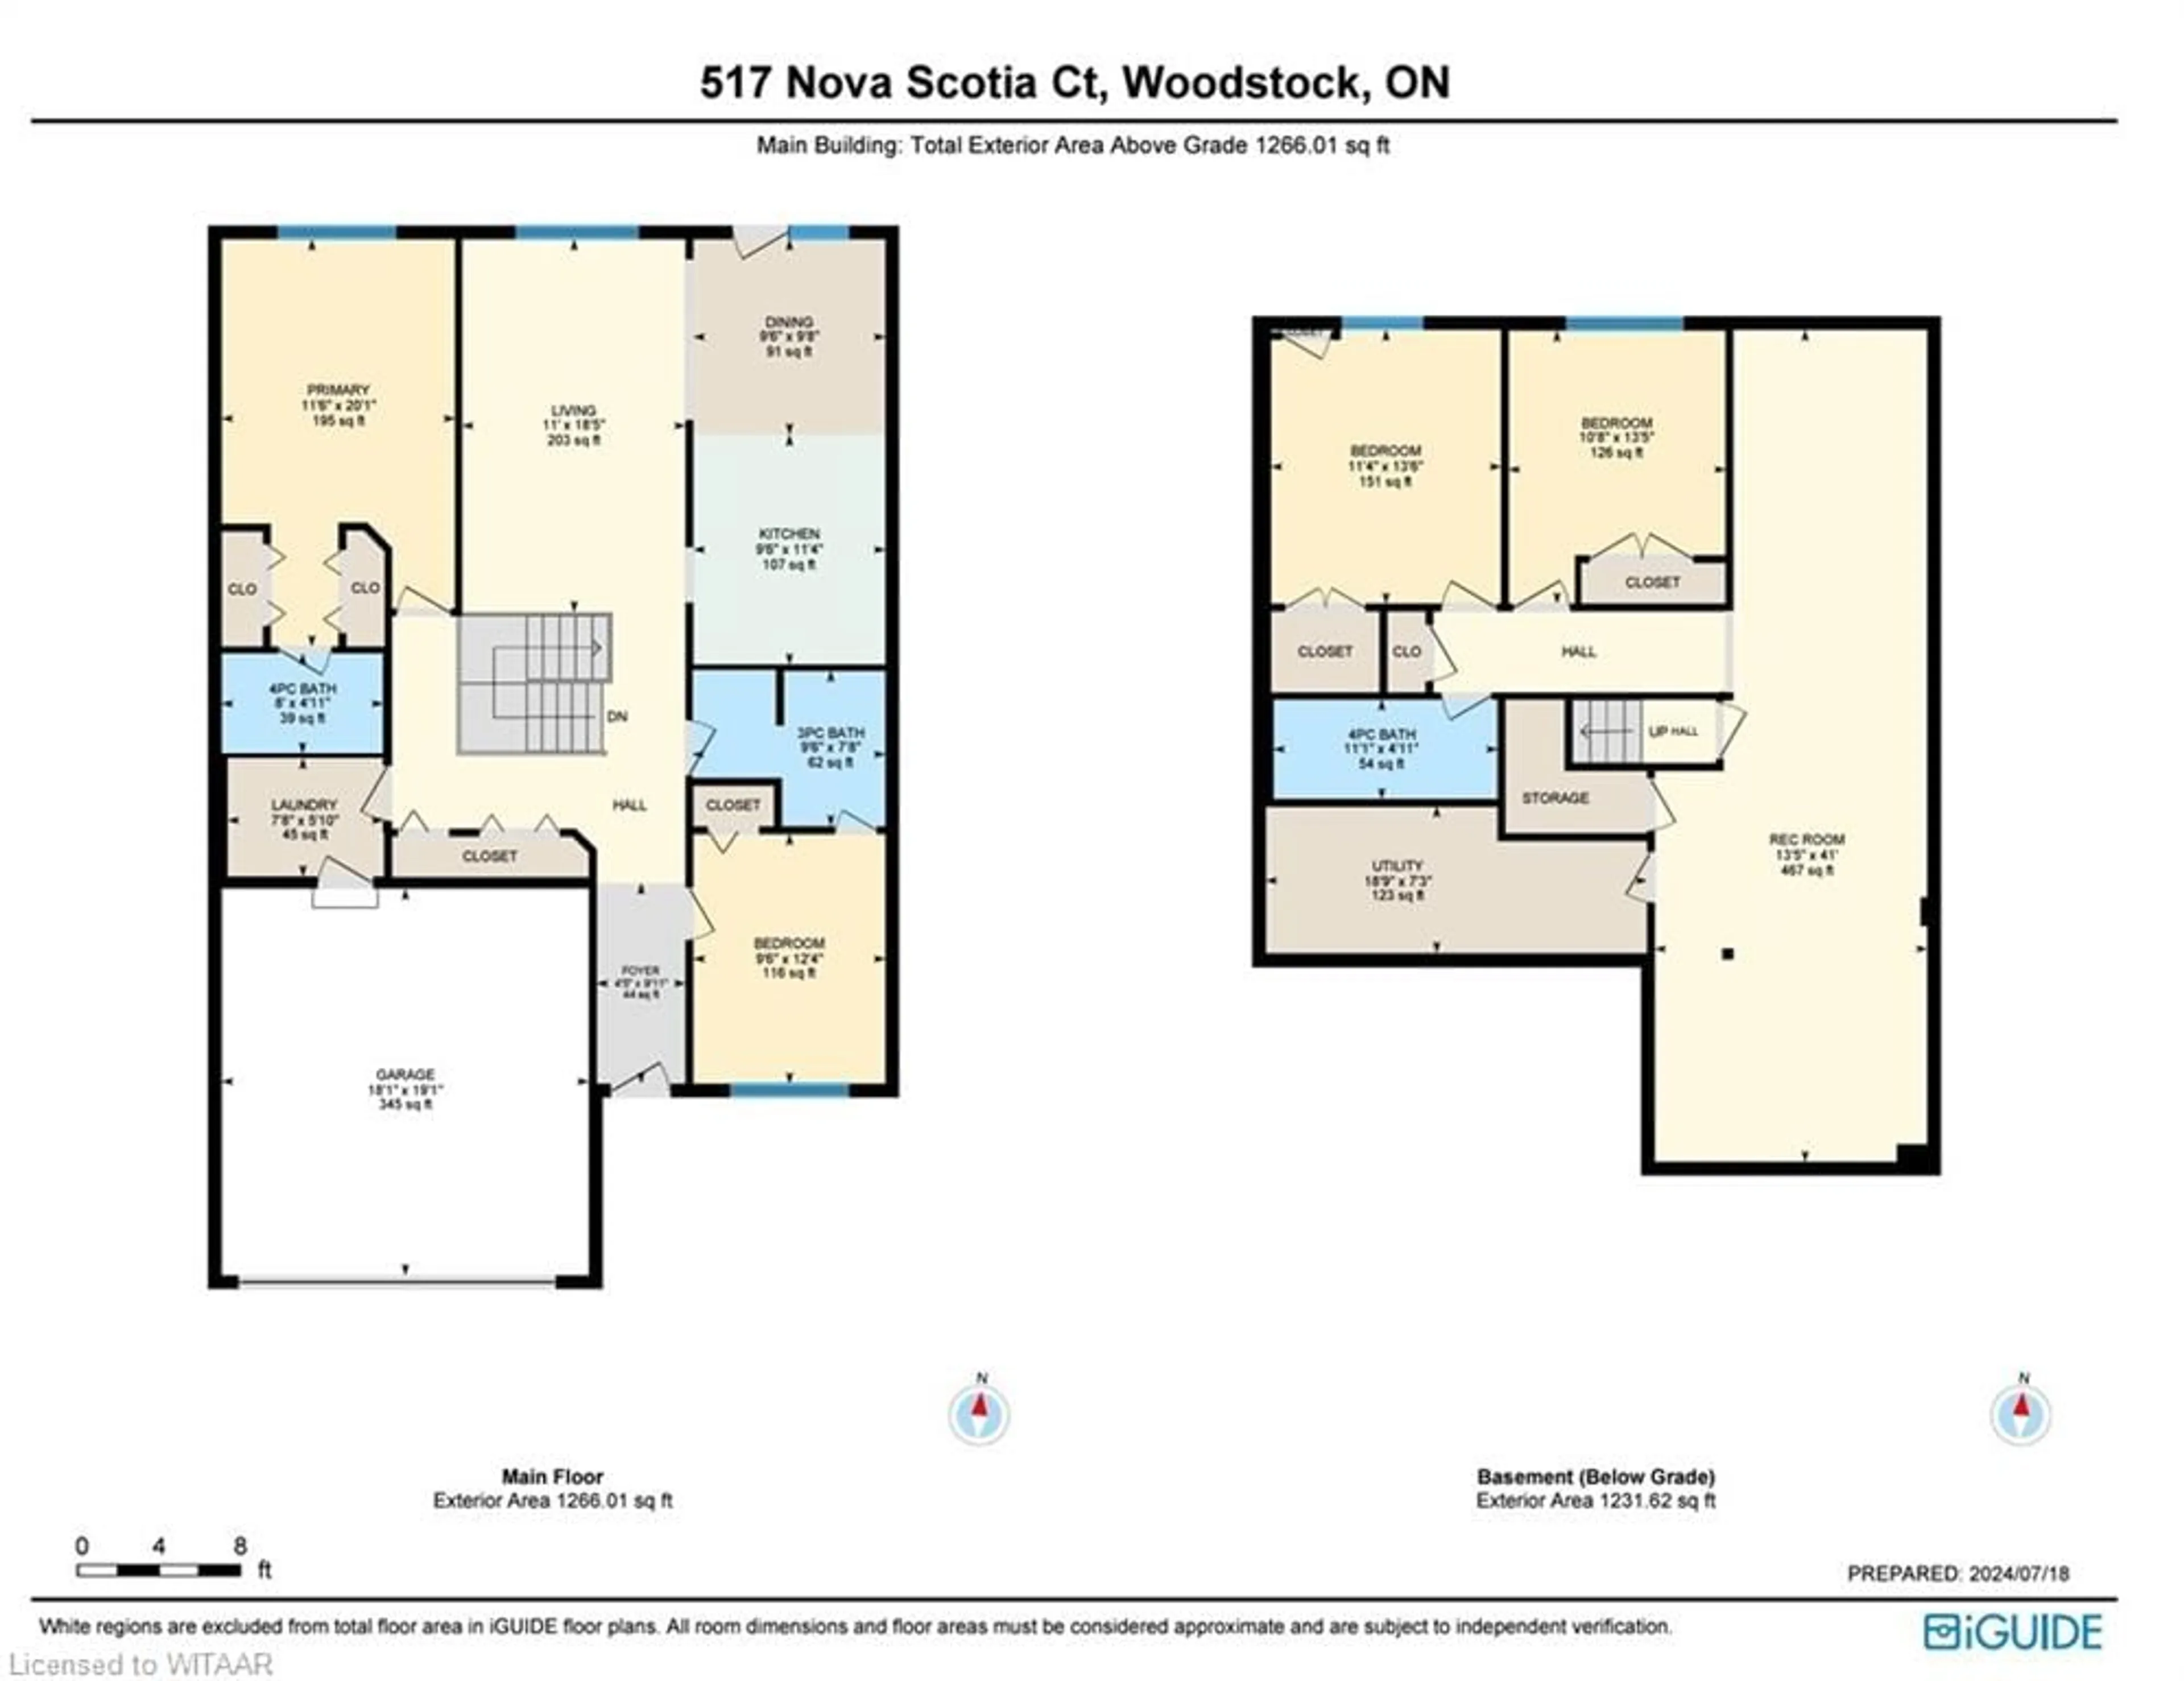 Floor plan for 517 Nova Scotia Crt #12, Woodstock Ontario N4S 8Z3